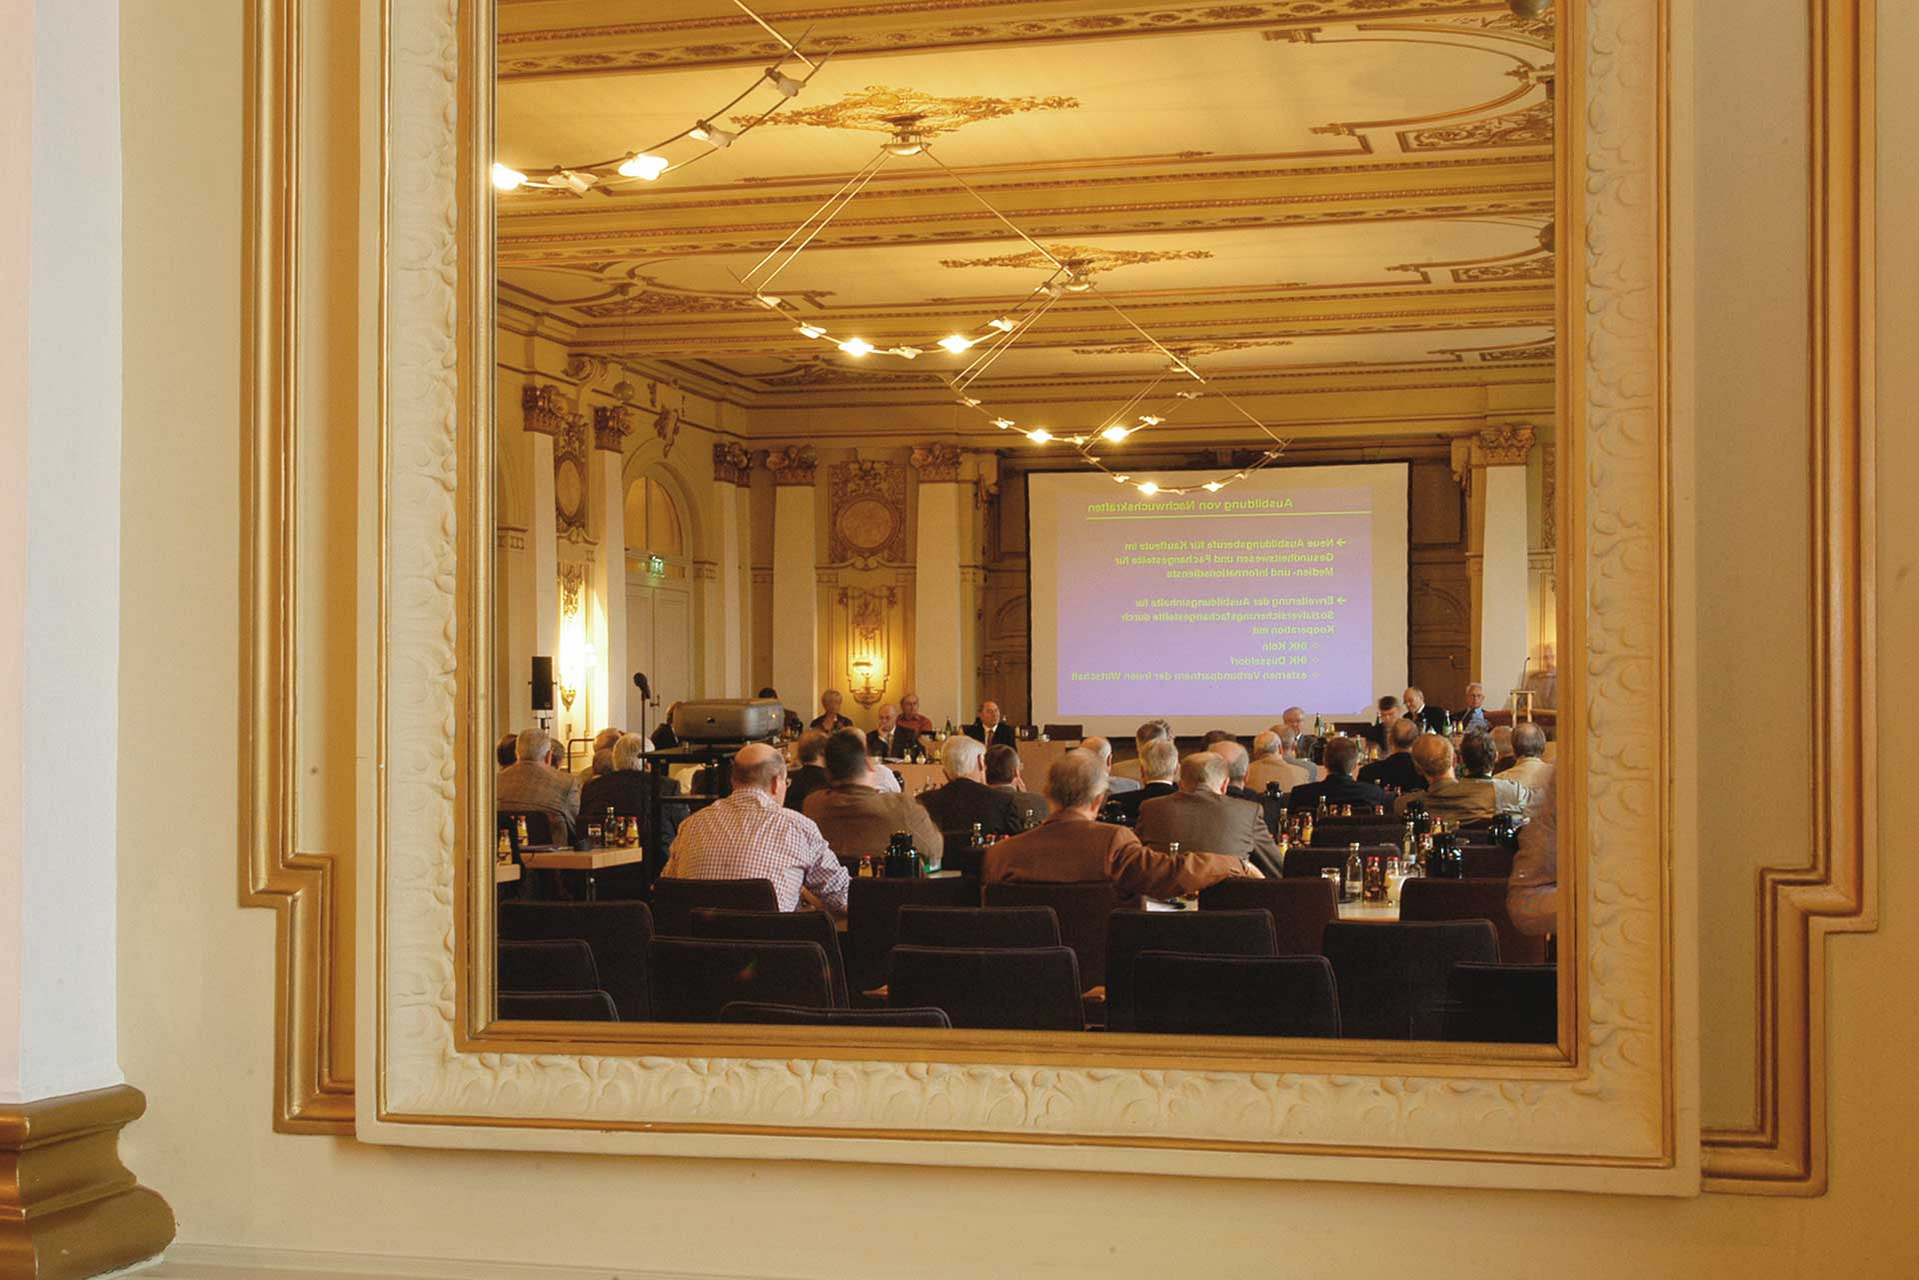 Tagung im Offenbach Saal in der Historischen Stadthalle Wuppertal